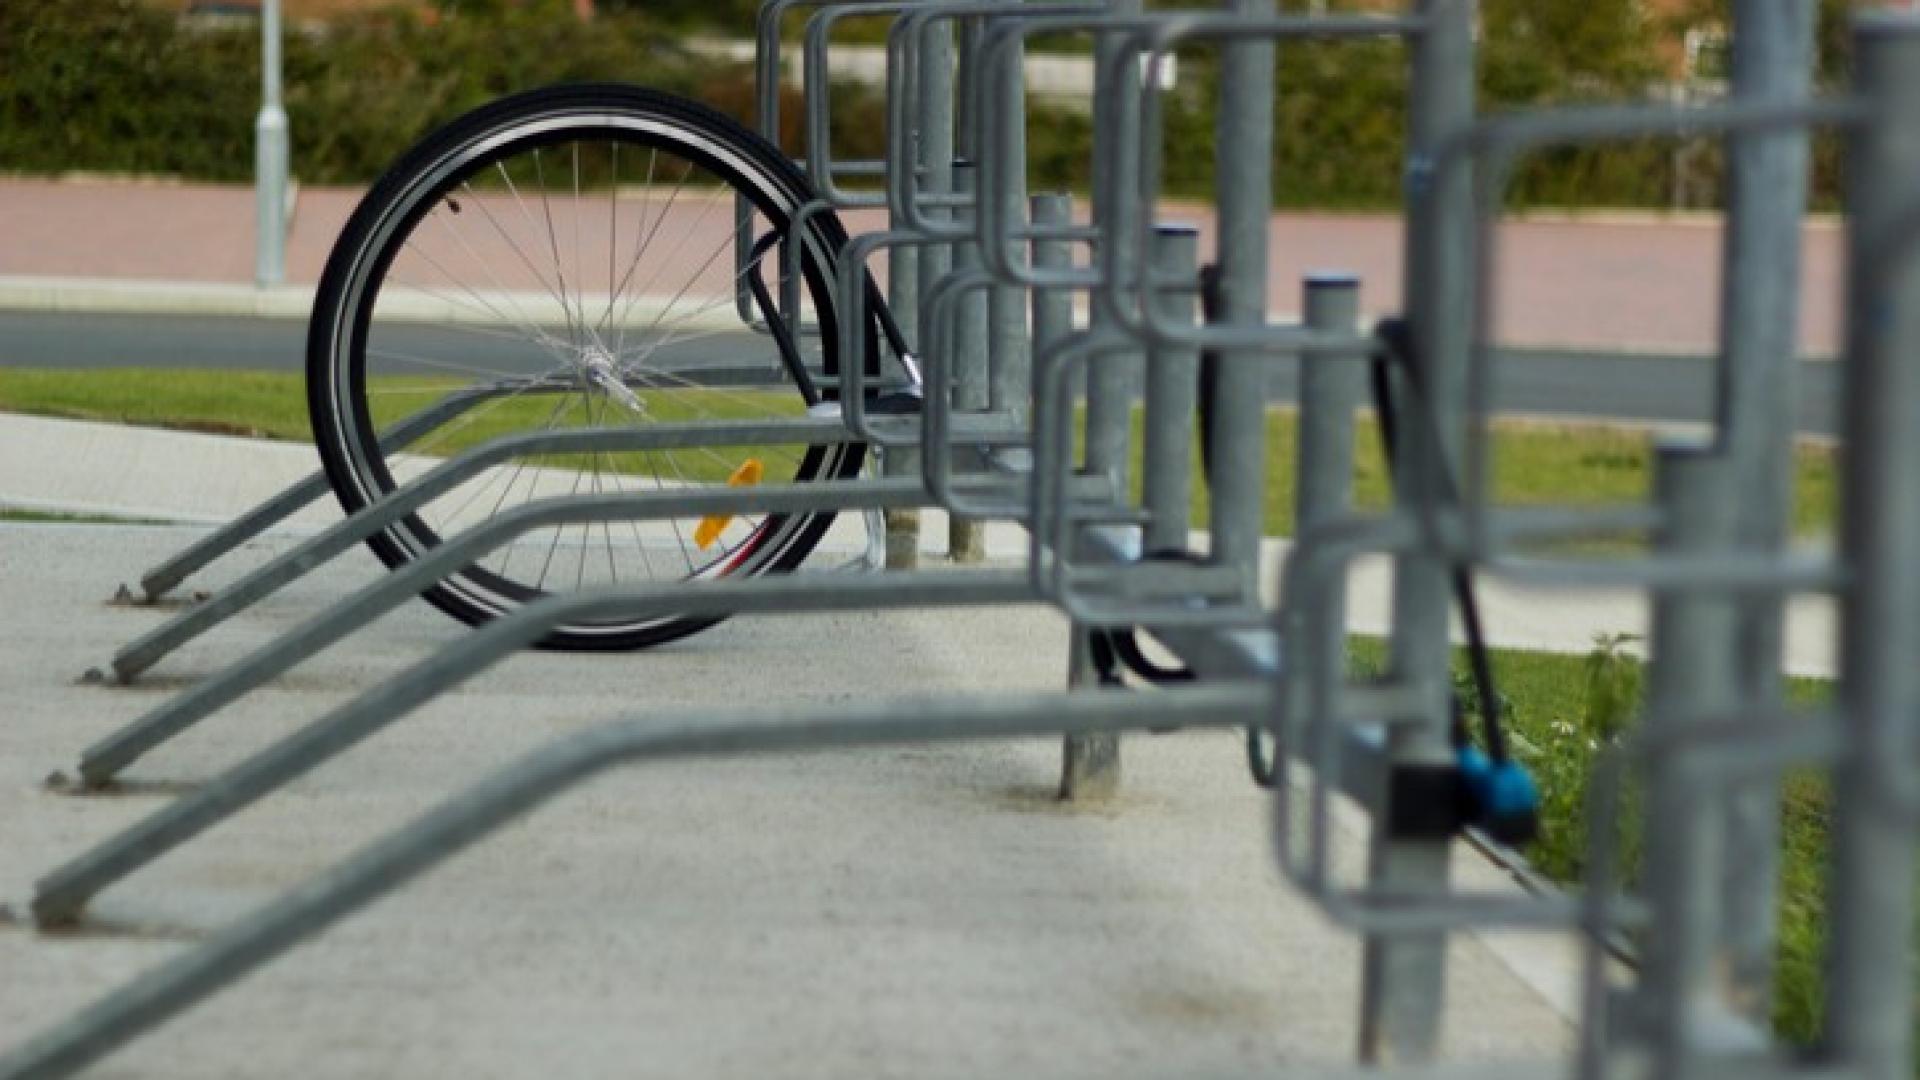 An einem Fahrradständer ist ein einzelner Reifen angekettet da scheinbar das restliche Fahrrad gestohlen wurde.